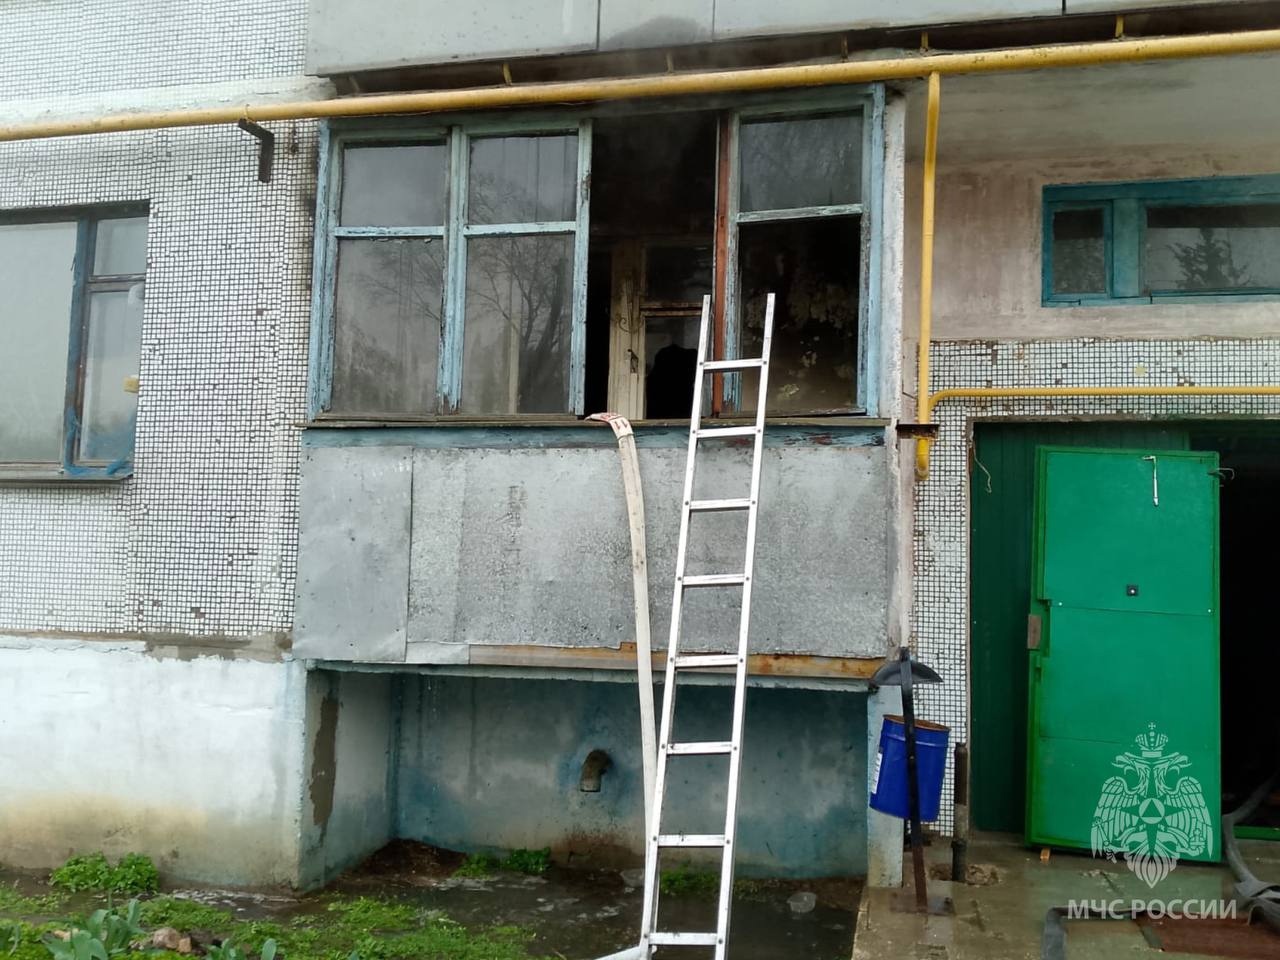 В Ивановской области из-за загоревшегося холодильника эвакуировали 10 человек 